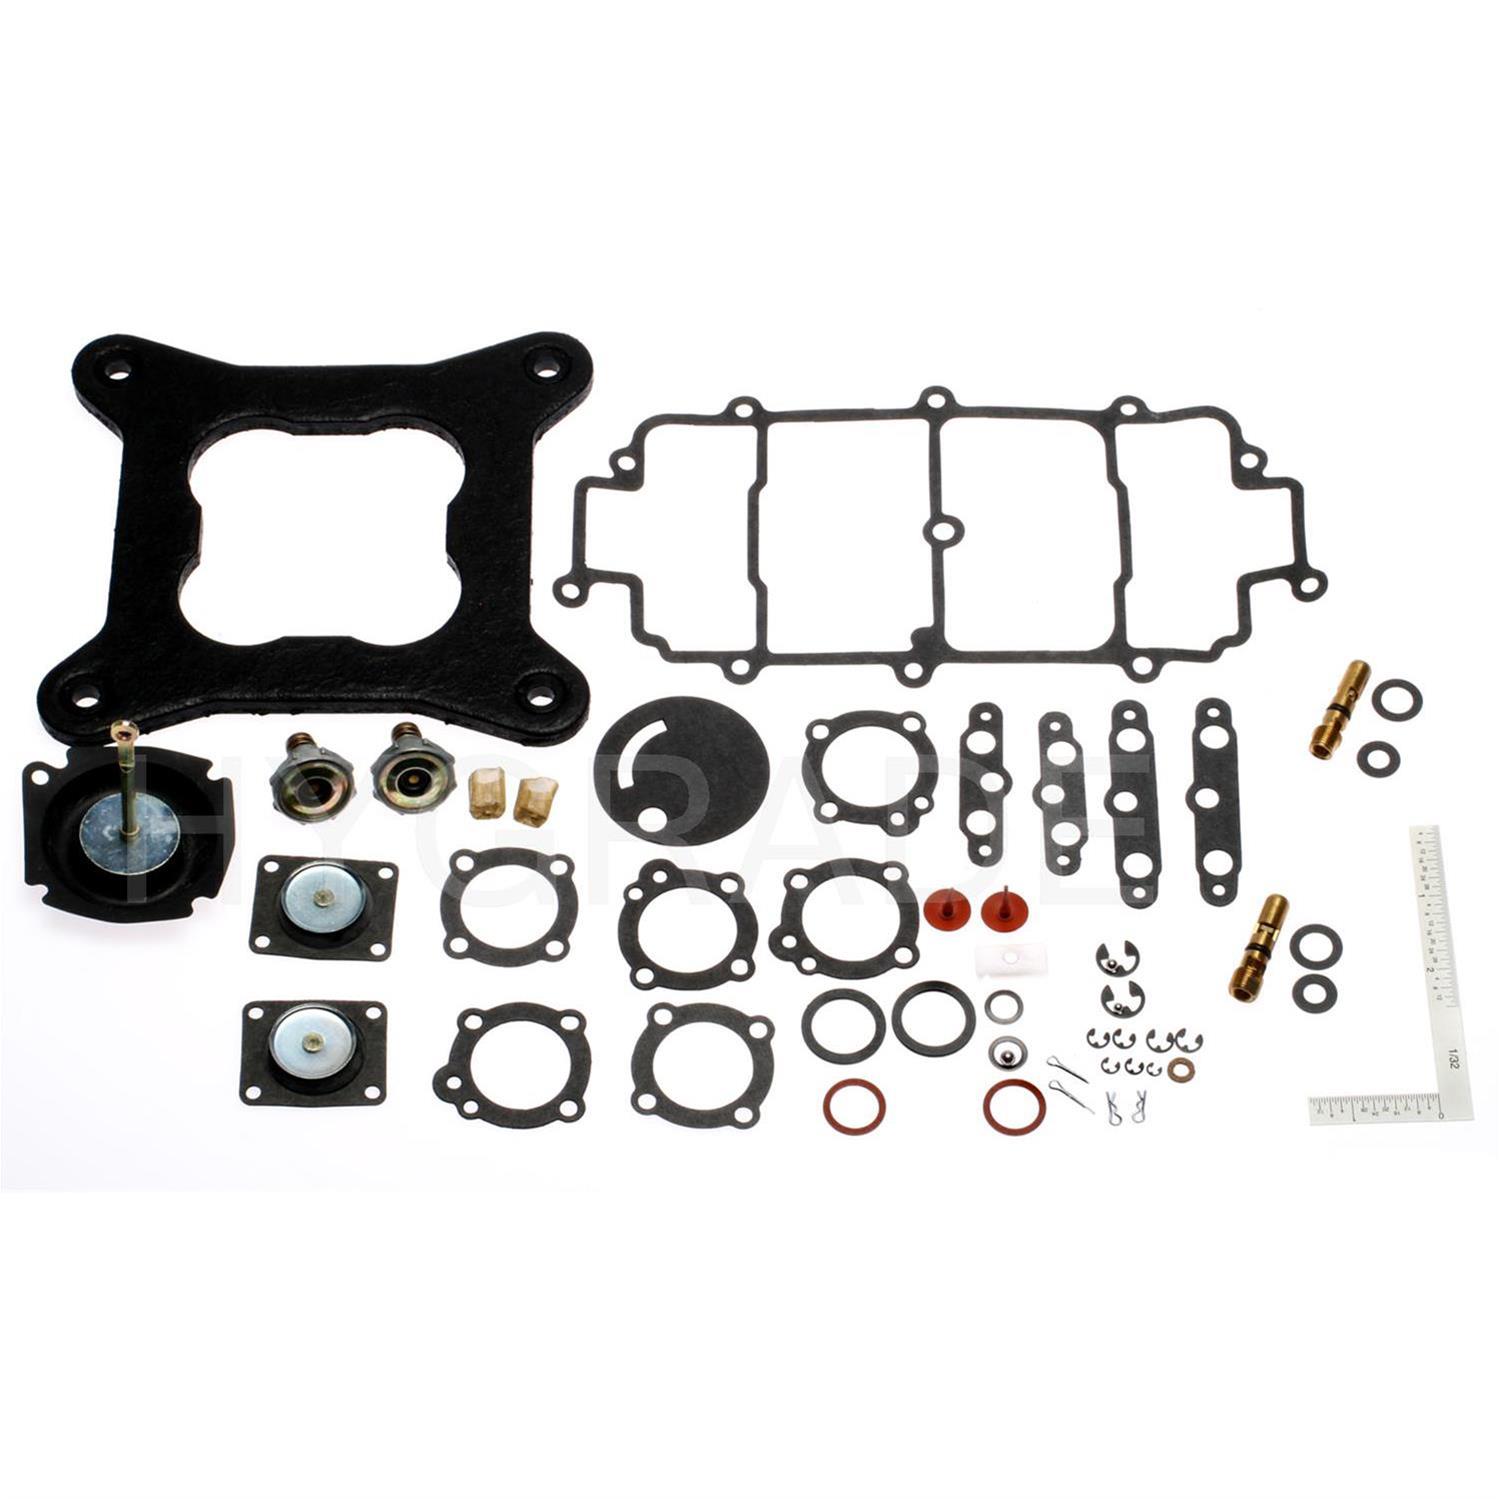 Standard Motor Products 1633 Carburetor Kit